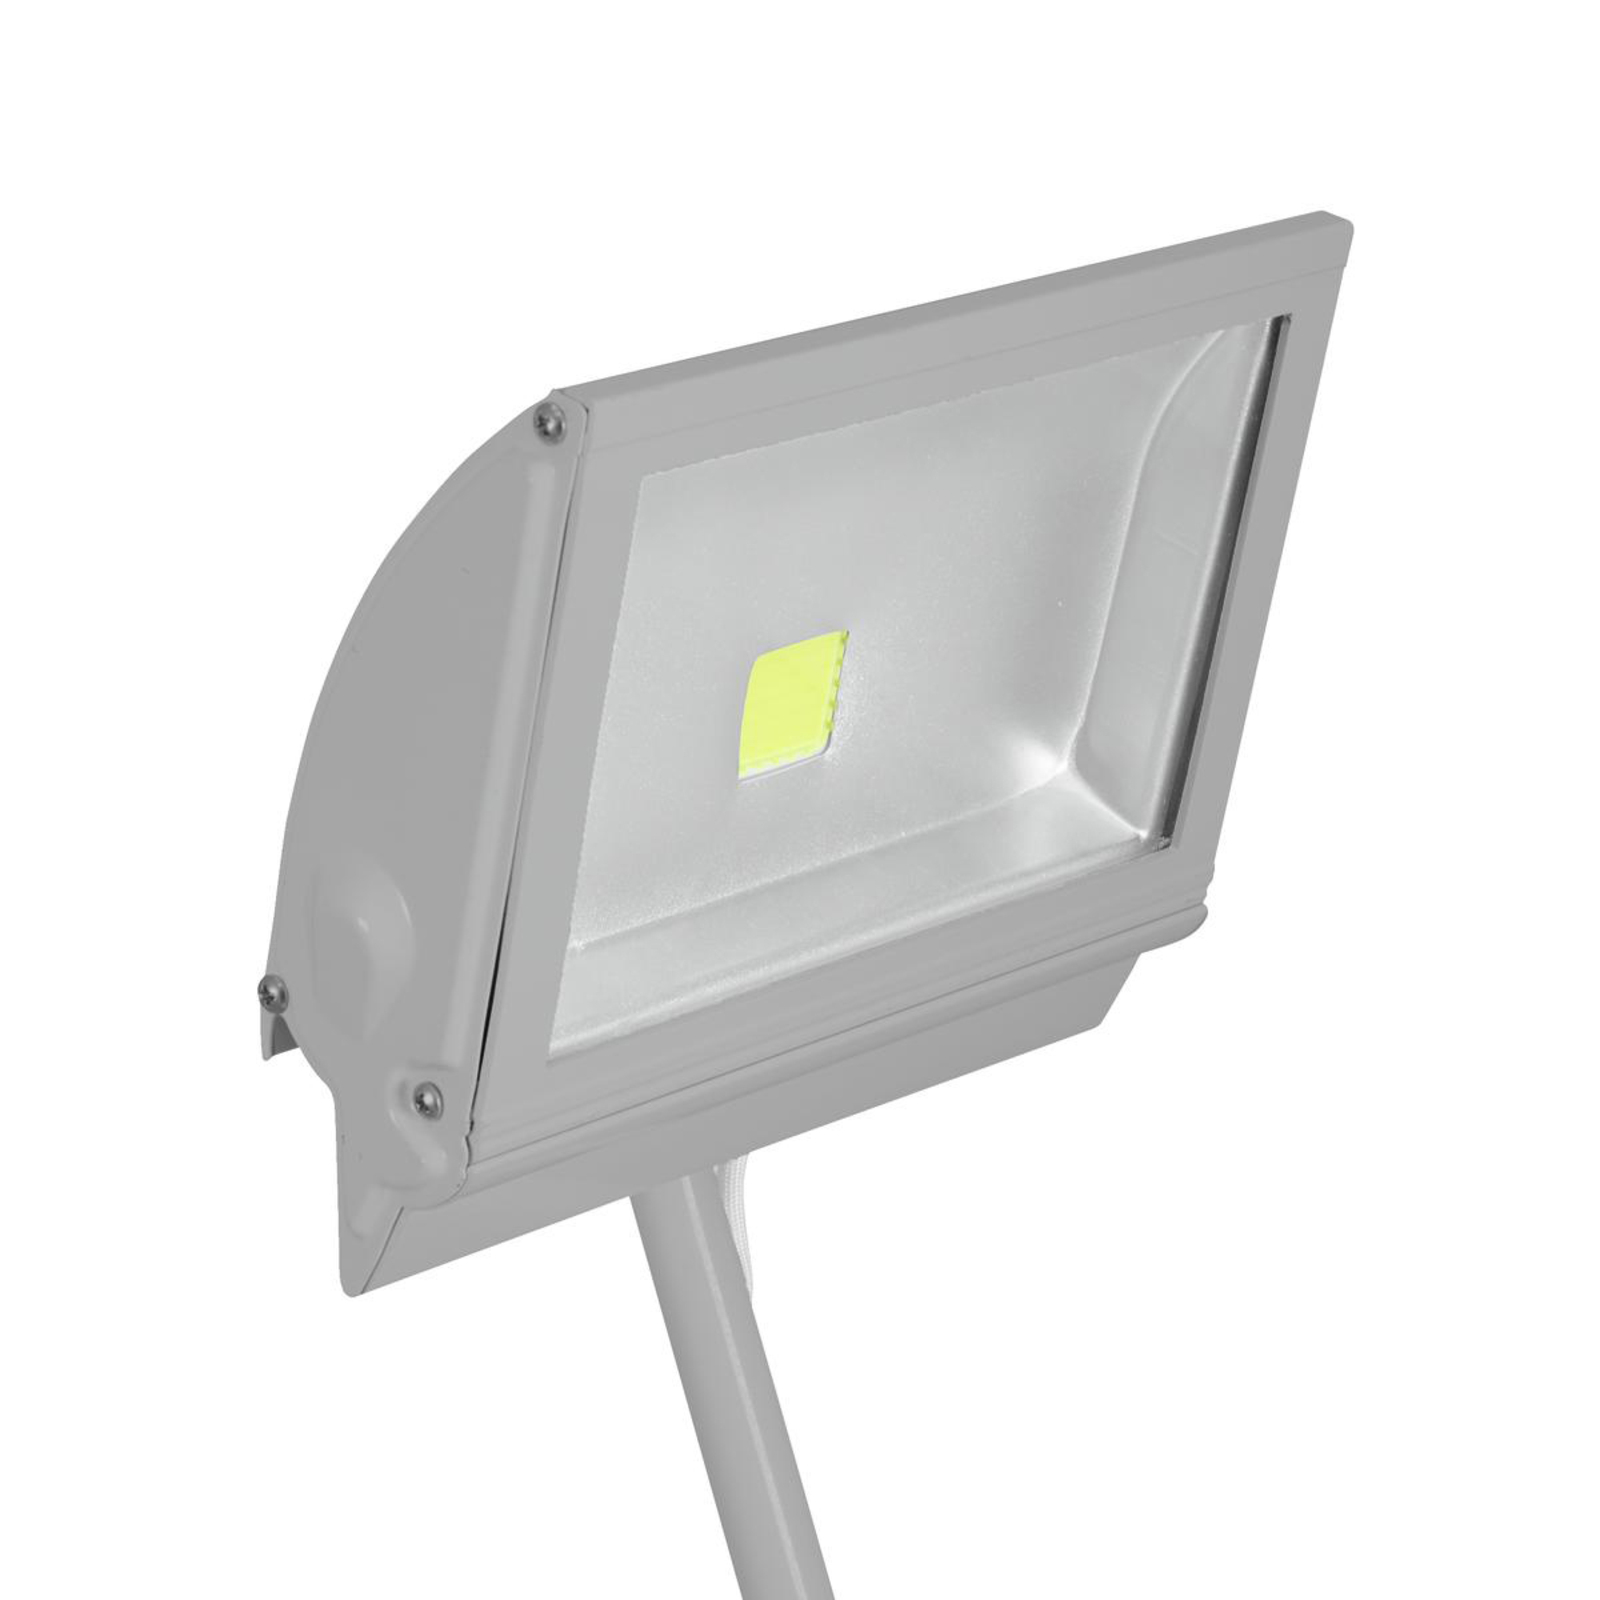 EUROLITE KKL-50 LED lampa se svorkou 50W stříbrná